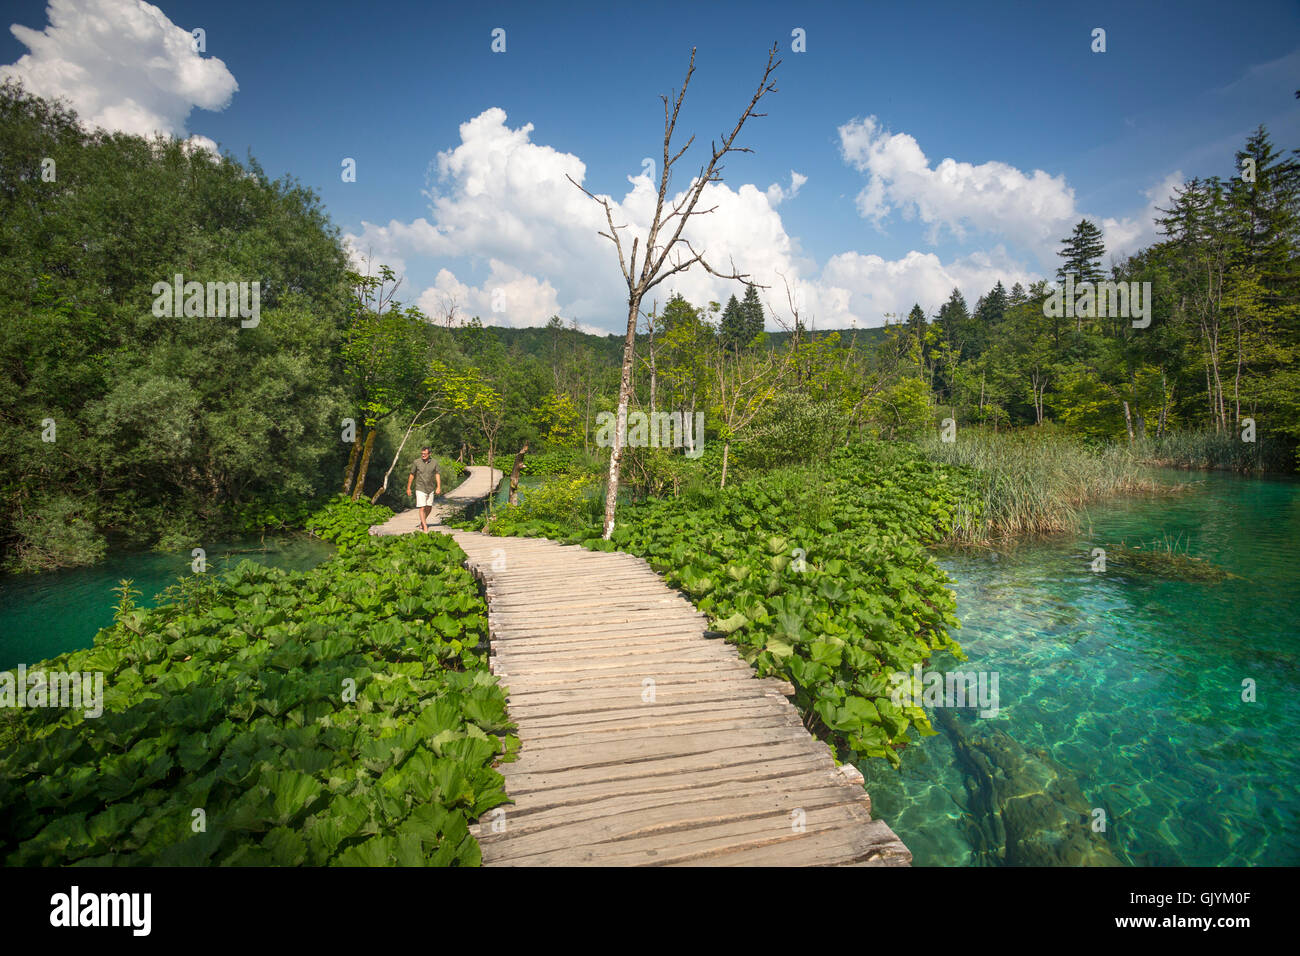 Ein Tourist, ein Spaziergang auf einem Holzsteg, gesäumt von Pestwurze (Petasites). Nationalpark Plitvicer Seen Kroatien. Blaues Wasser. Stockfoto